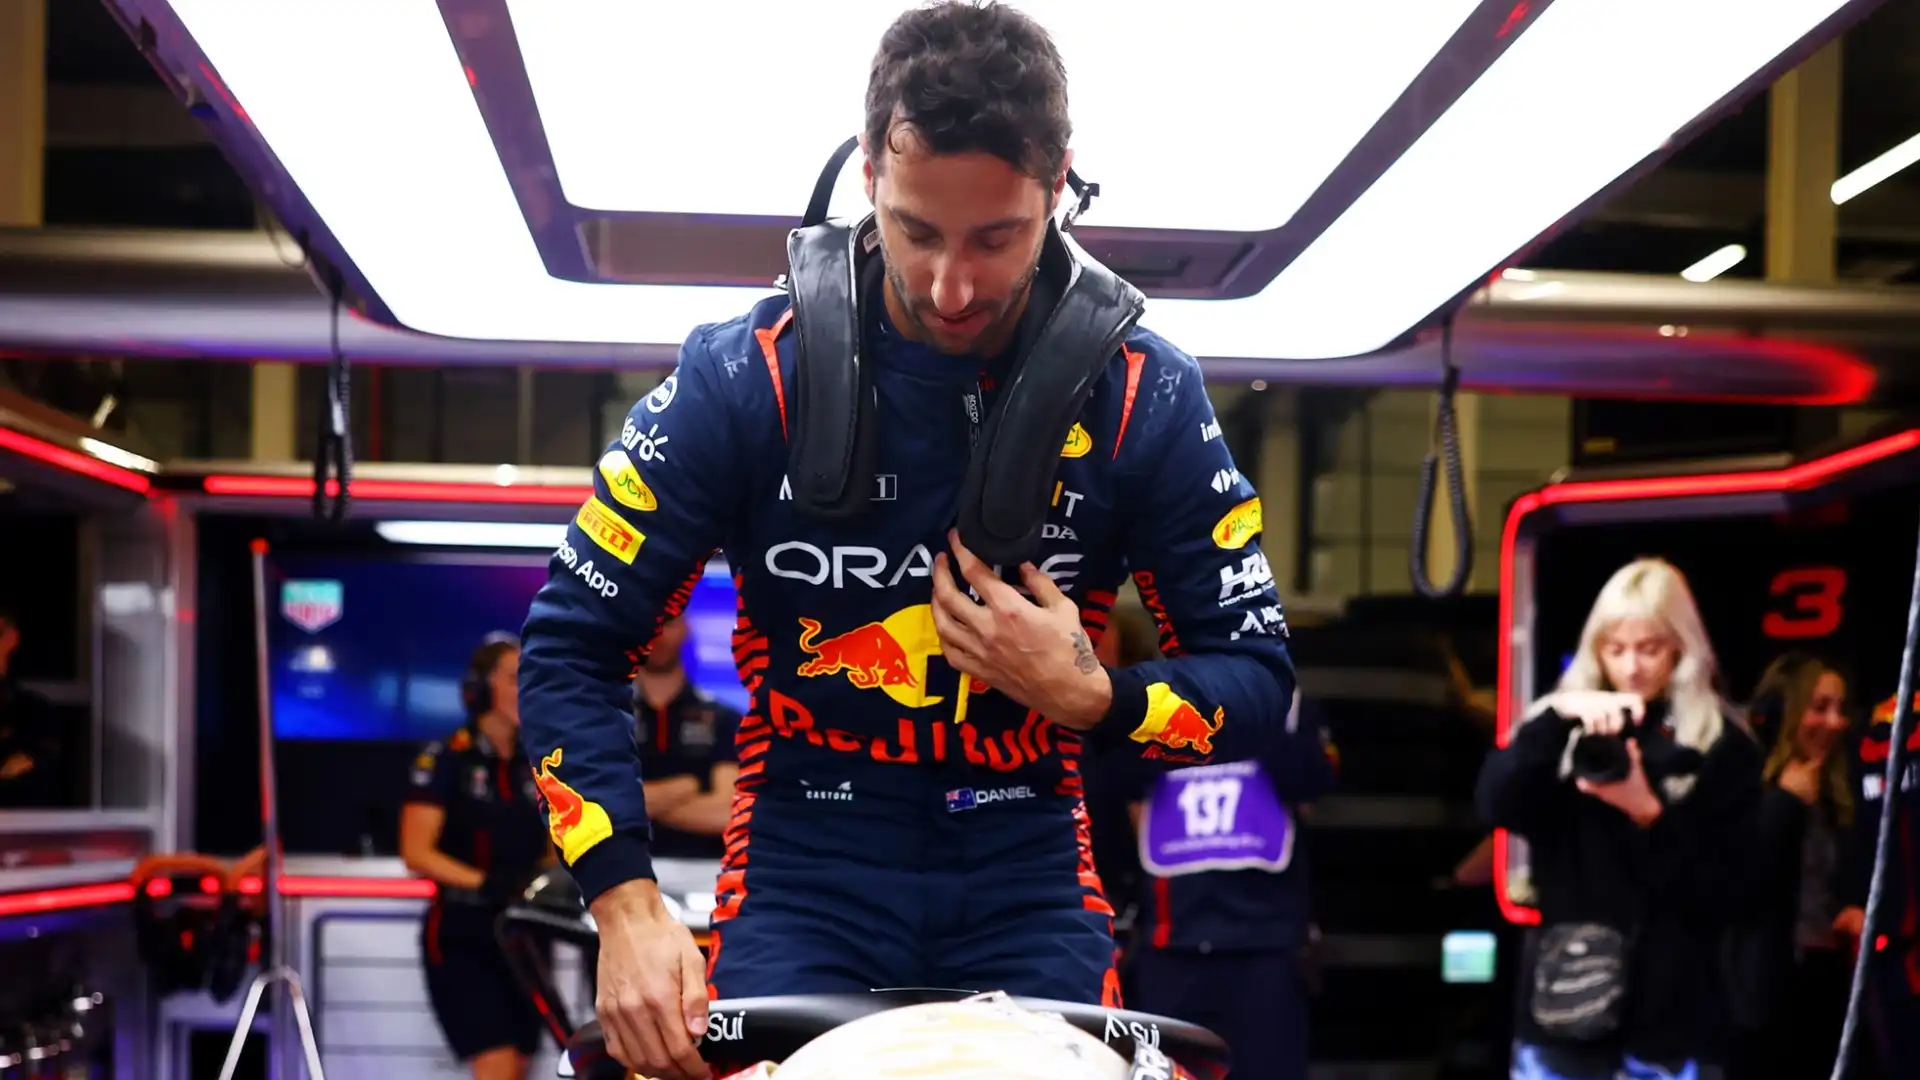 Secondo i rumors, infatti, nel contratto di Daniel Ricciardo ci sarebbe una clausola speciale